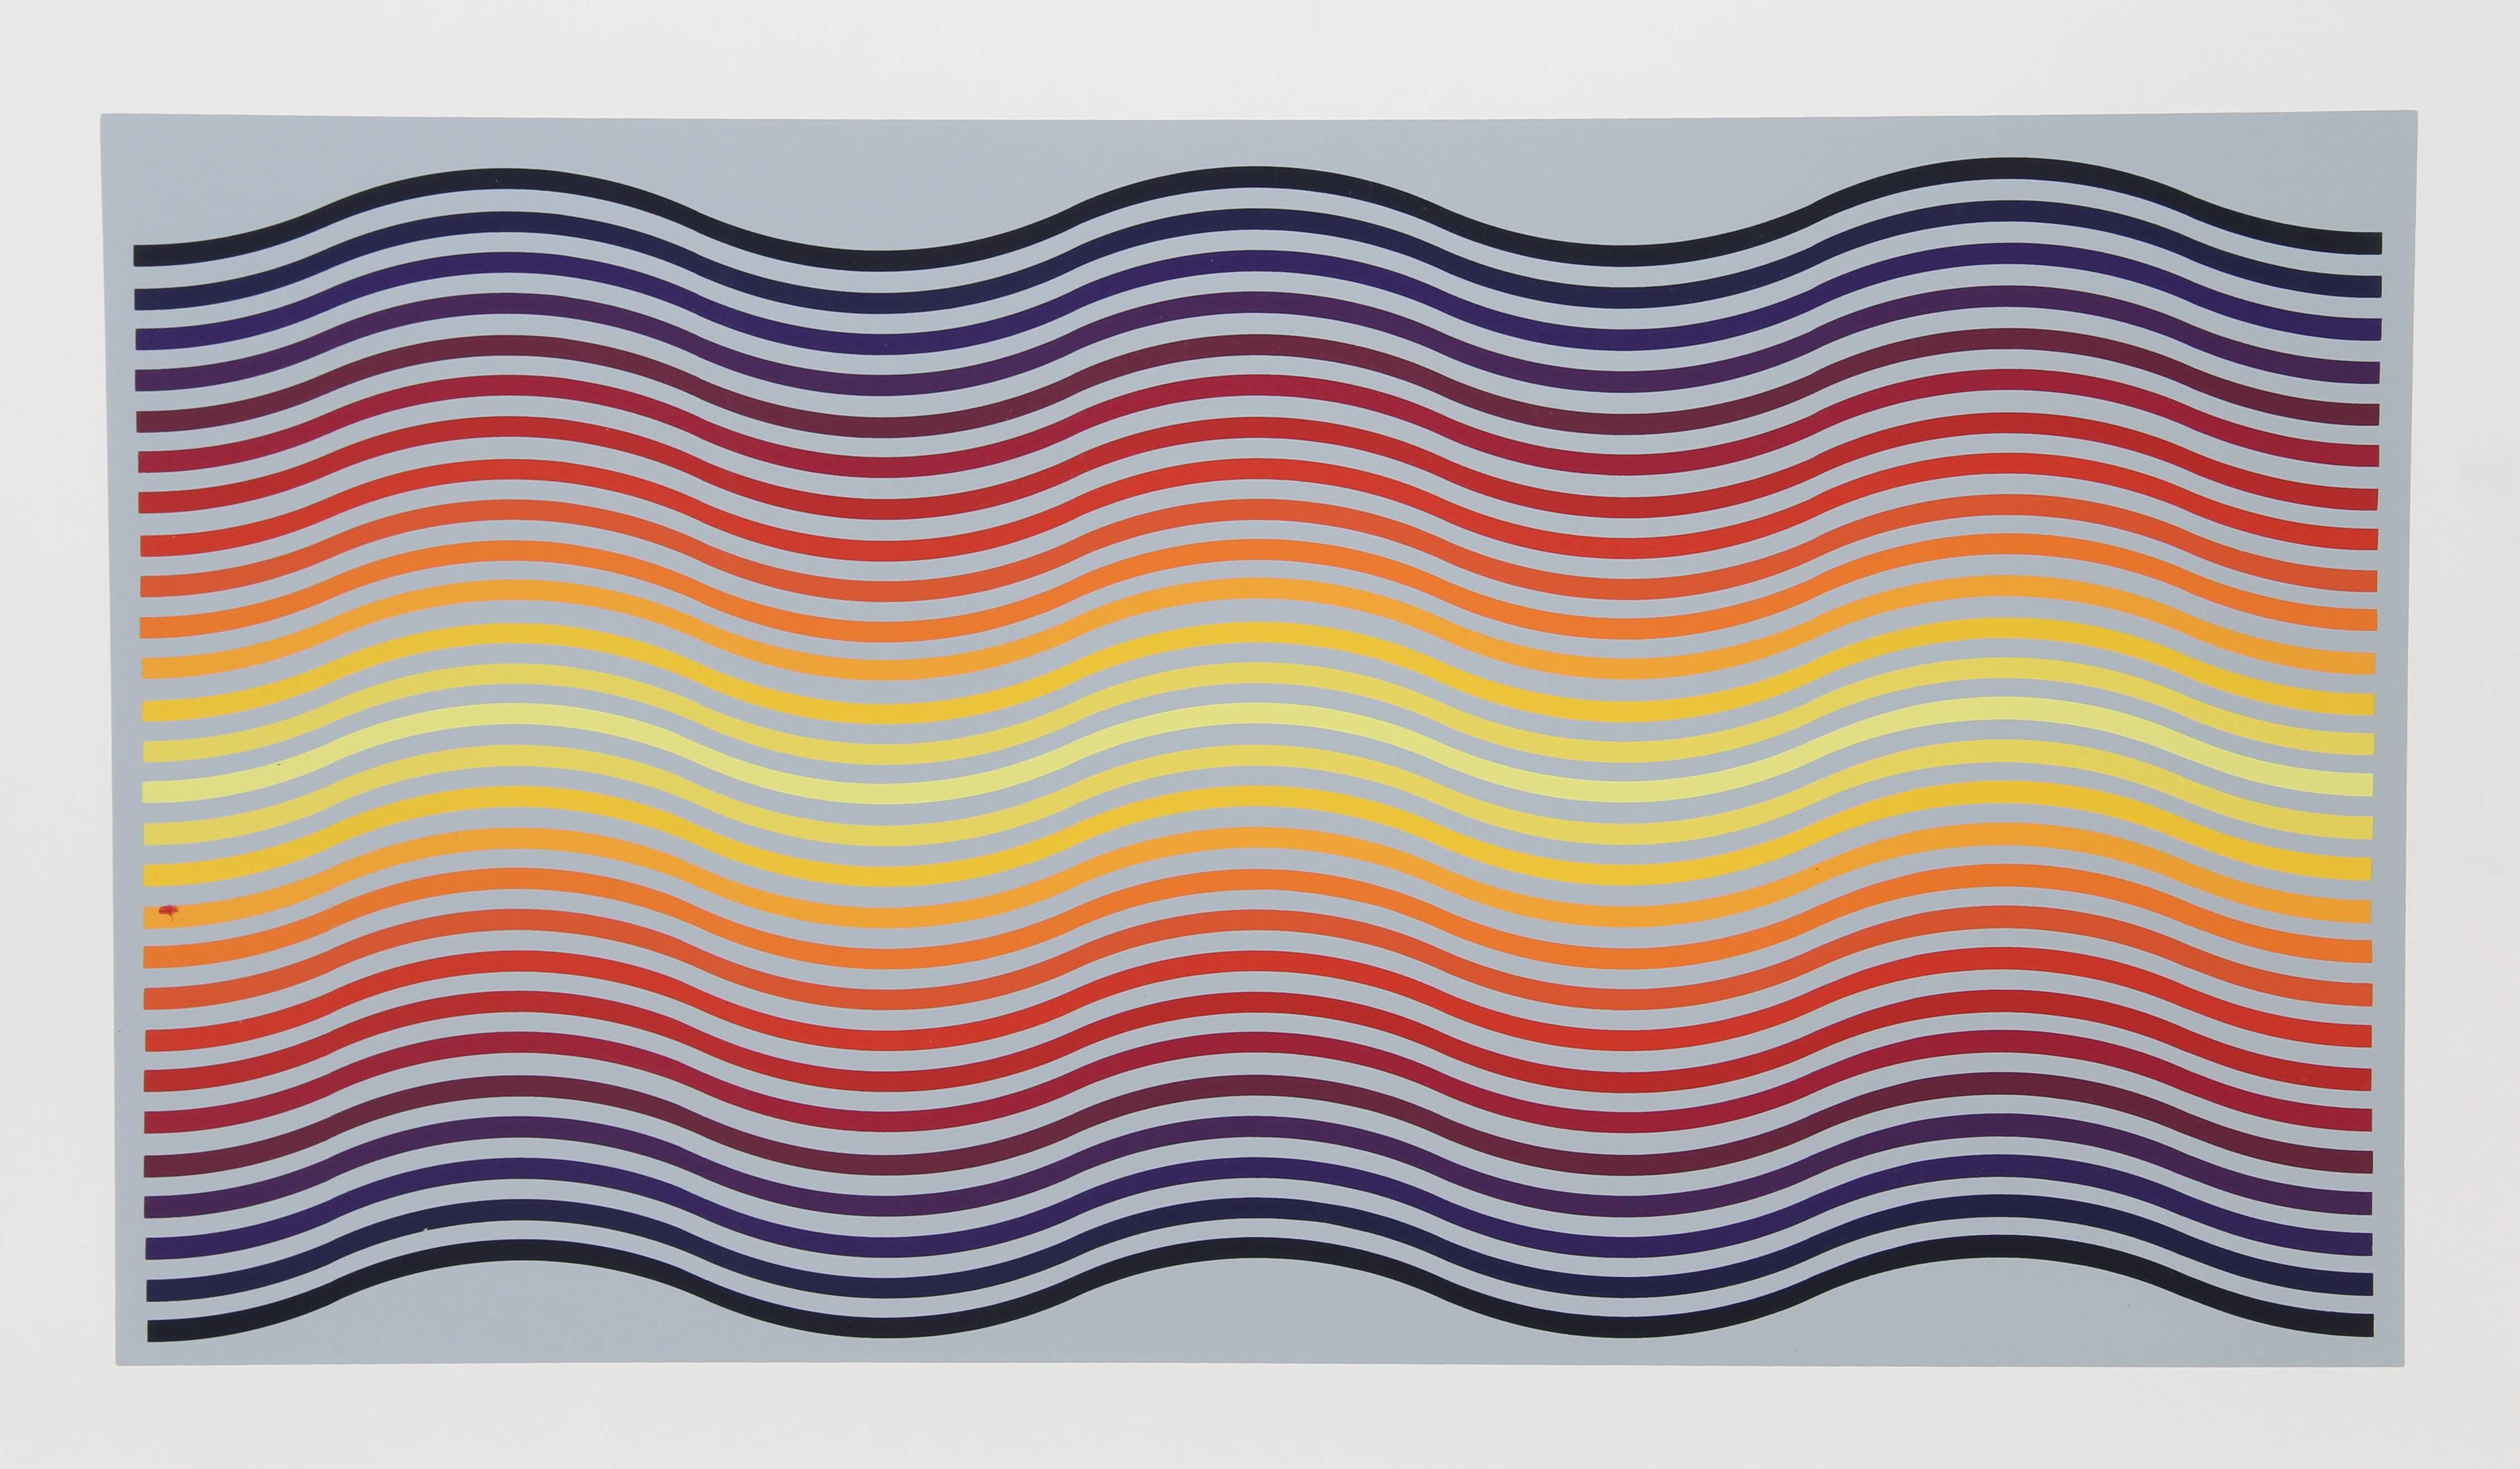 Künstler:  Jurgen Peters, Deutscher (1936 - )
Titel:  Regenbogen-Wellen
Jahr:  1981
Medium:  Siebdruck, signiert und nummeriert mit Bleistift
Auflage:  250, AP 30
Bildgröße:  18,5 x 34 Zoll
Größe:  22.5 in. x 38 in. (57.15 cm x 96.52 cm)